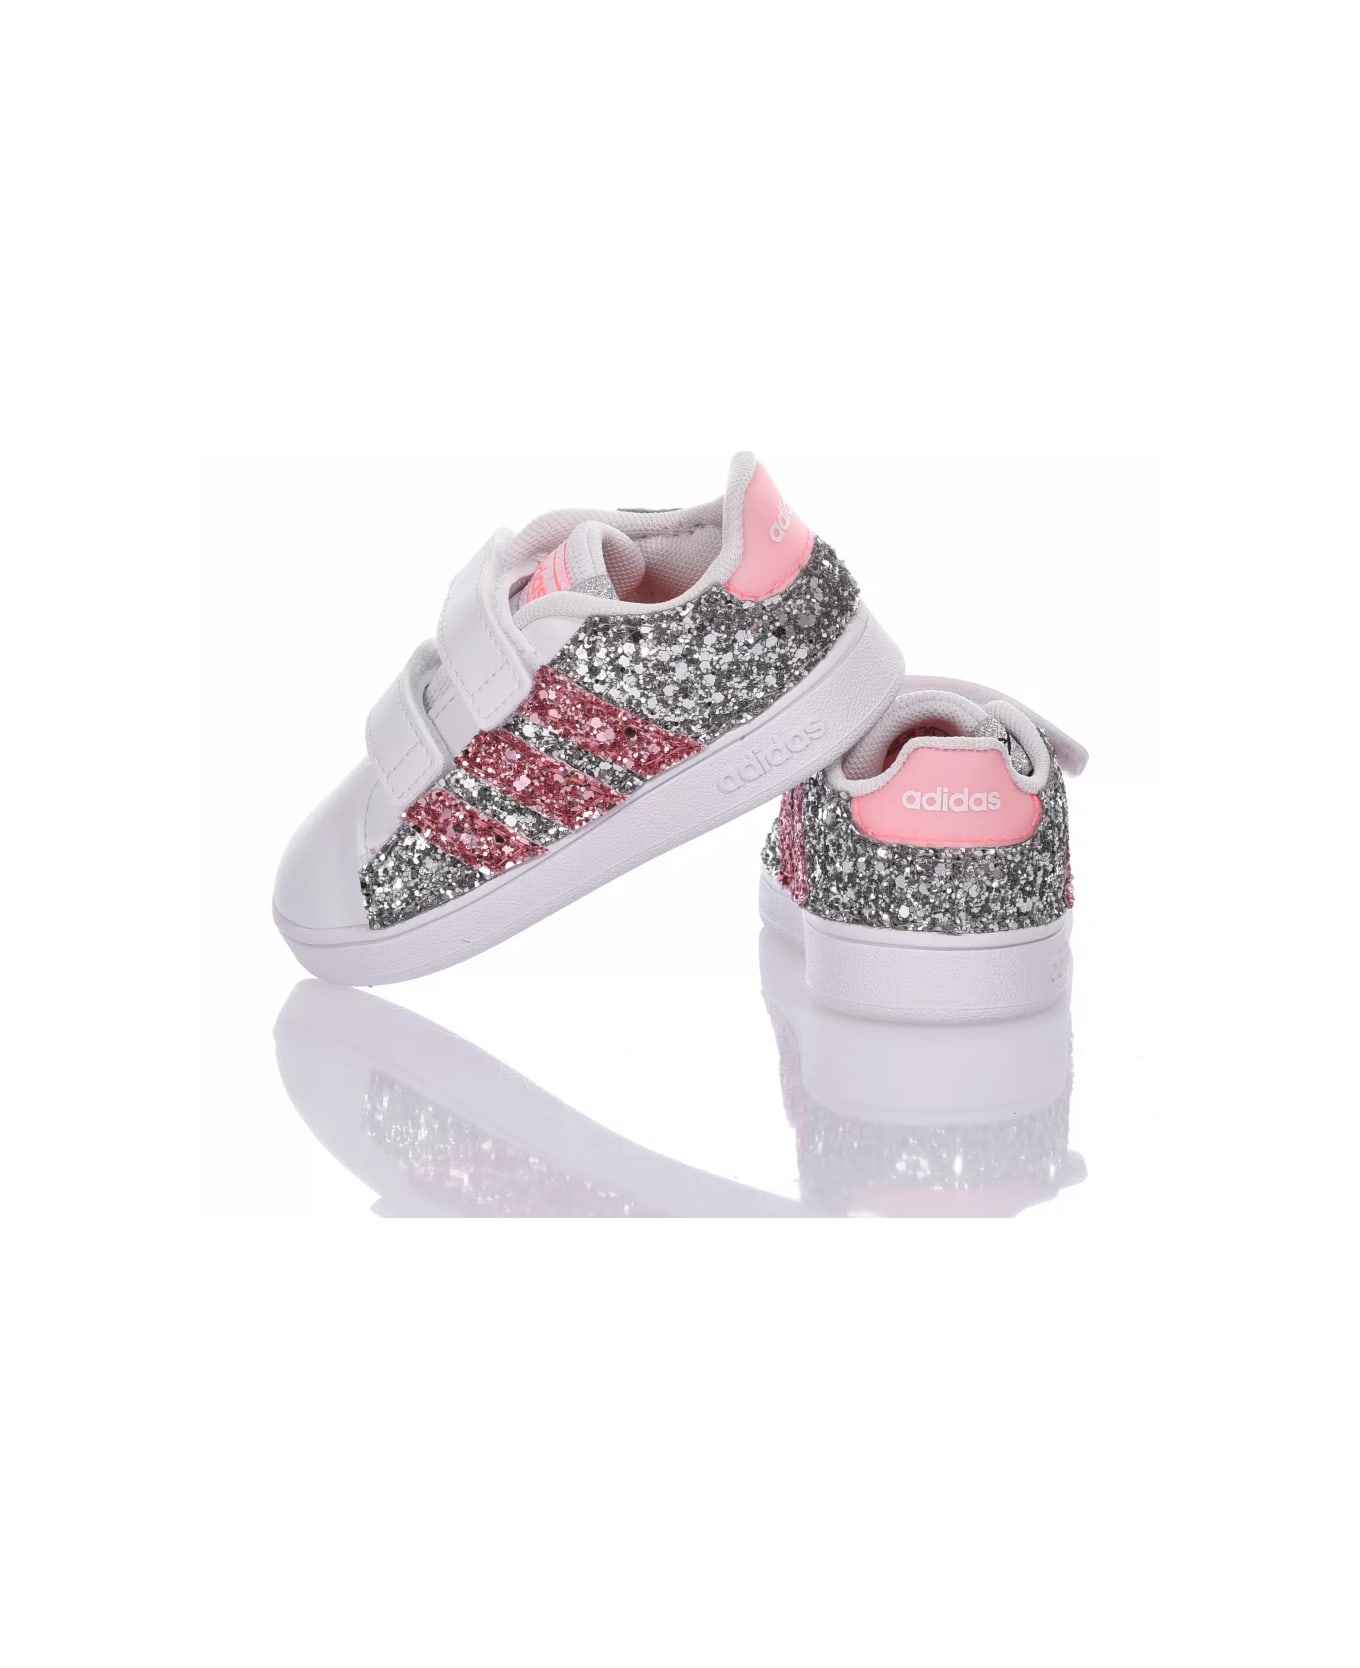 Mimanera Adidas Baby Glitter Pink Customized Mimanera シューズ